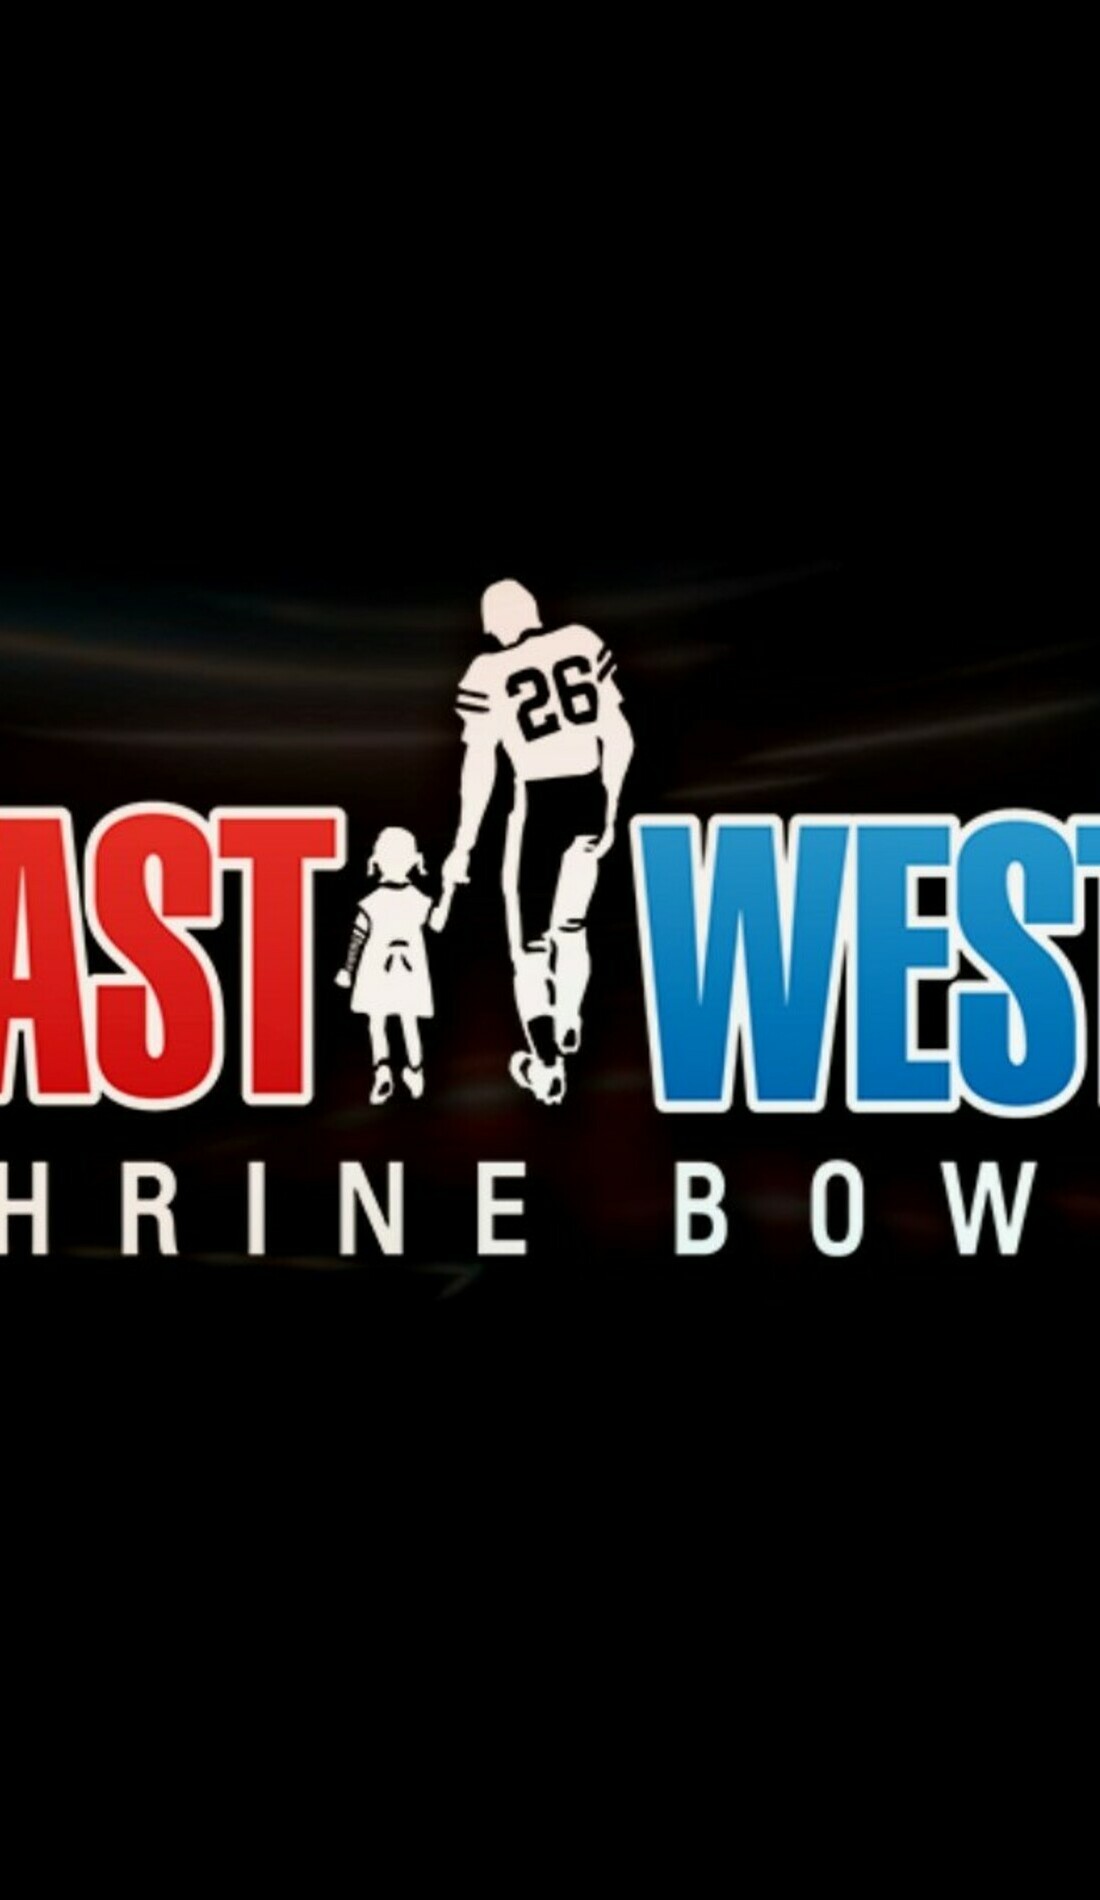 A East-West Shrine Bowl live event